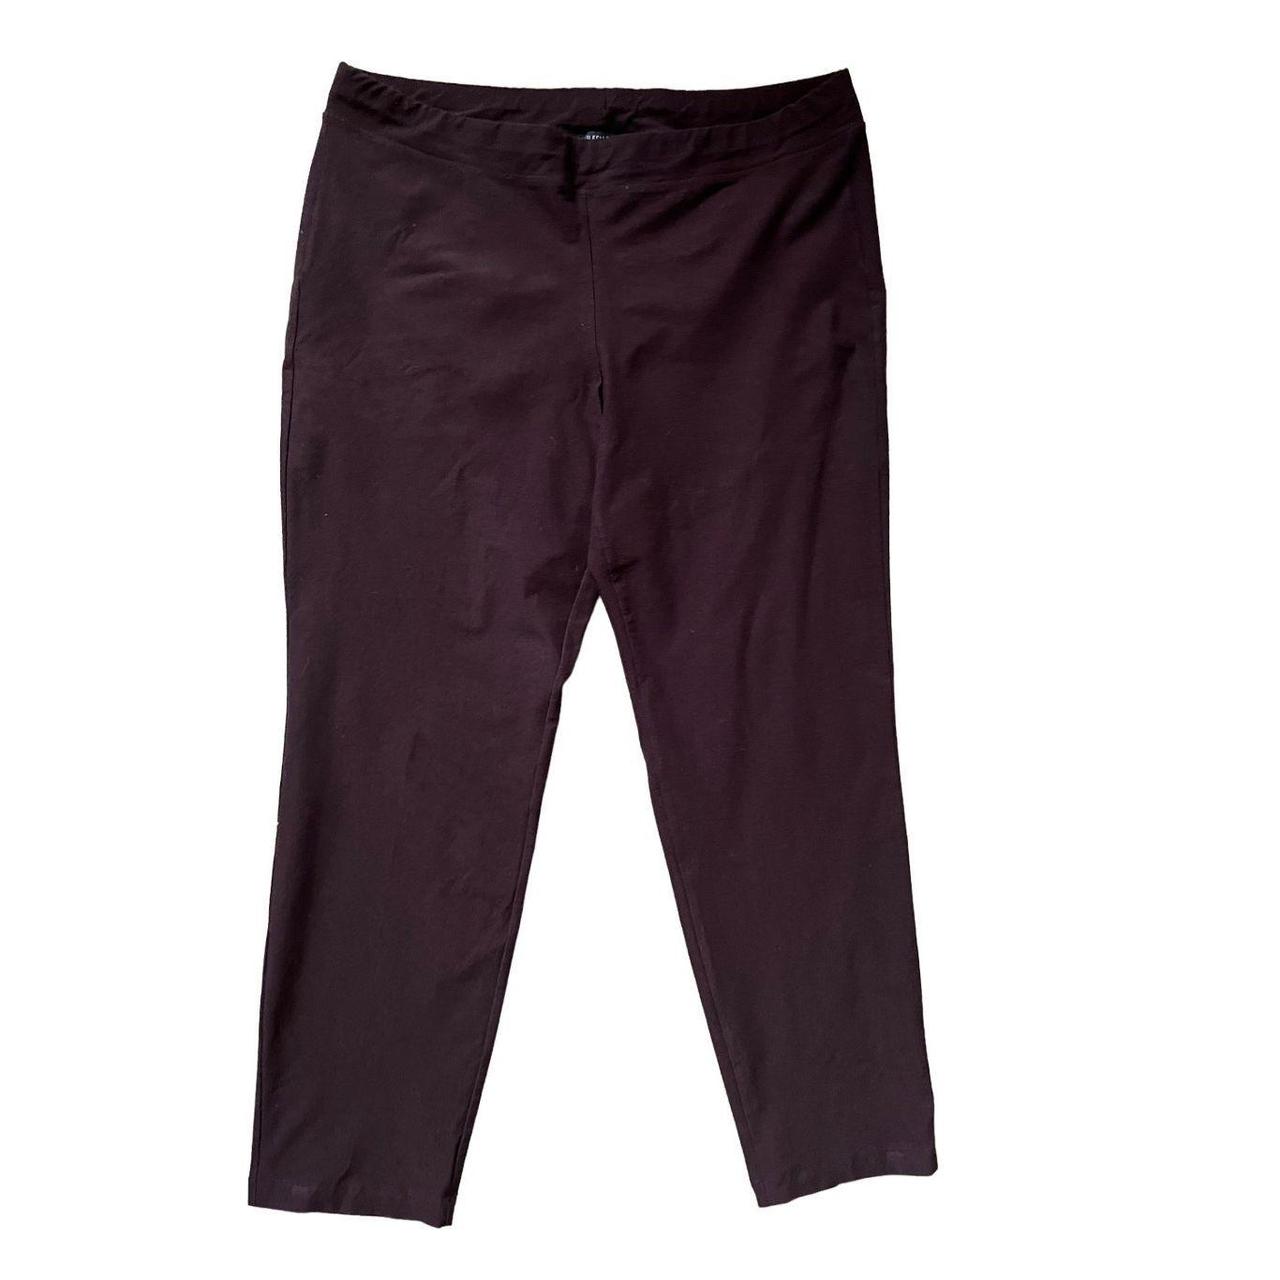 Torrid Premium Ponte Stretch Skinny Pants in Dark... - Depop